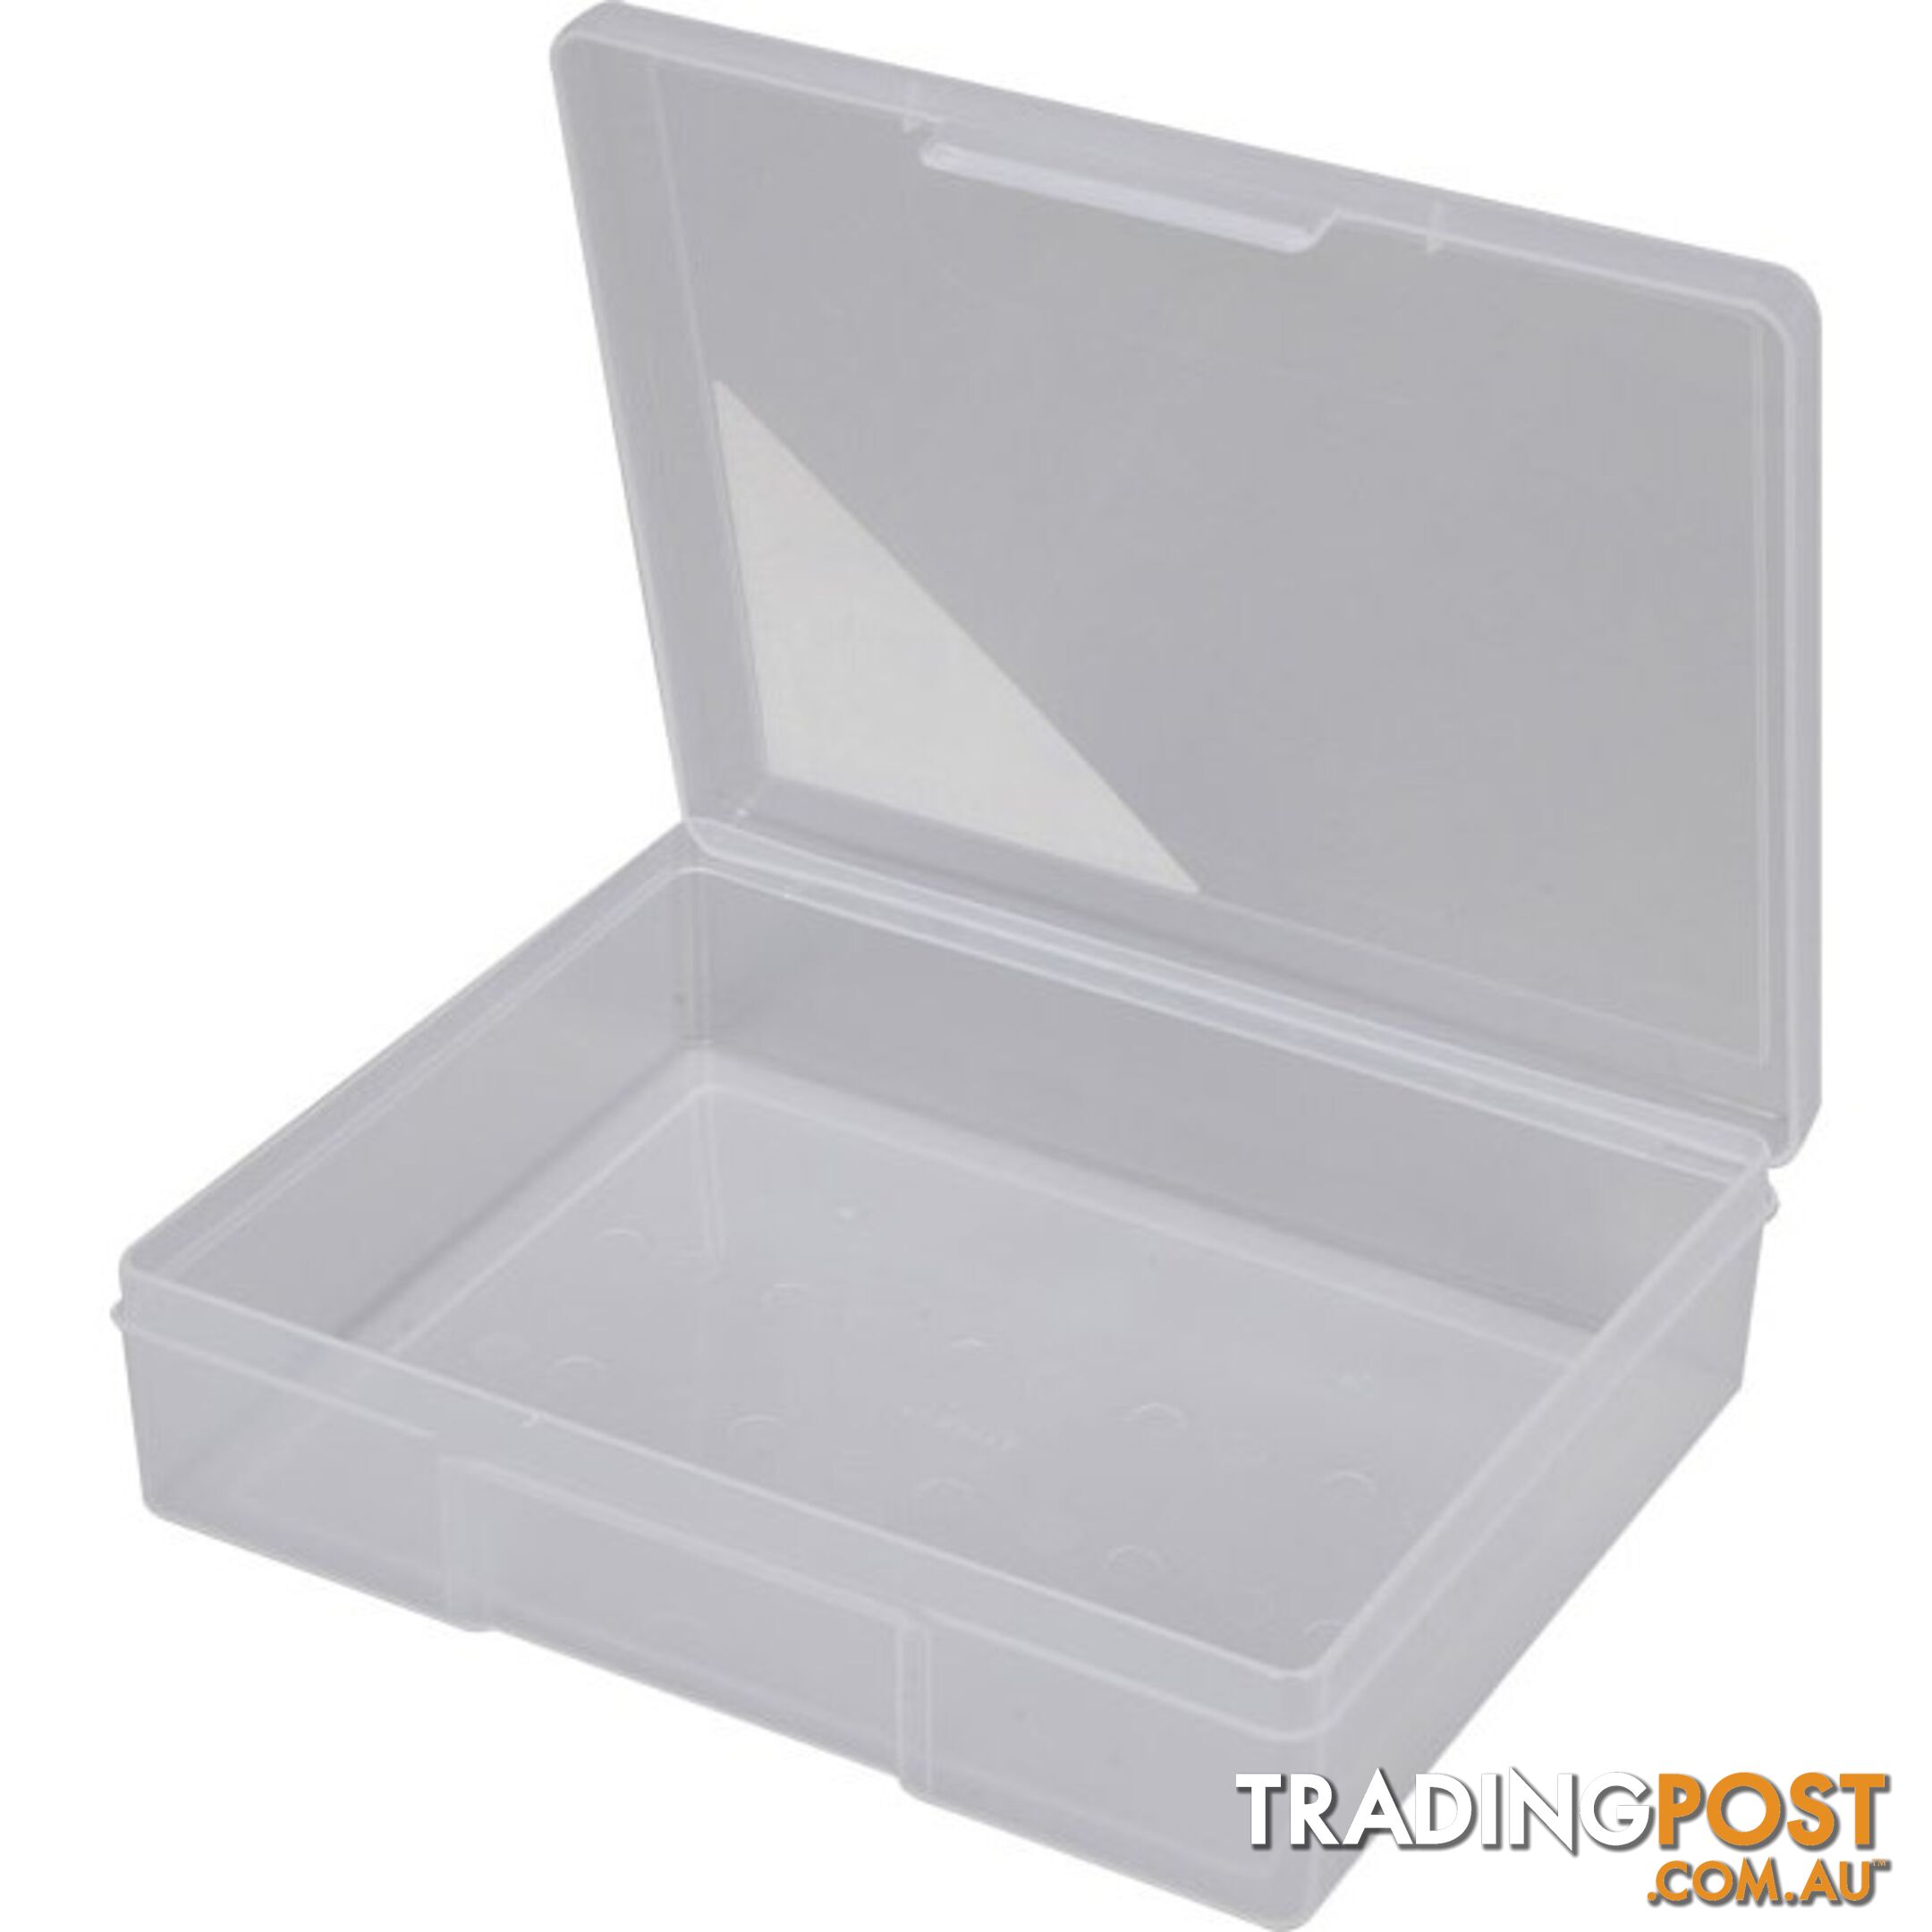 1H029 1 COMPARTMENT STORAGE BOX MEDIUM PLASTIC CASE